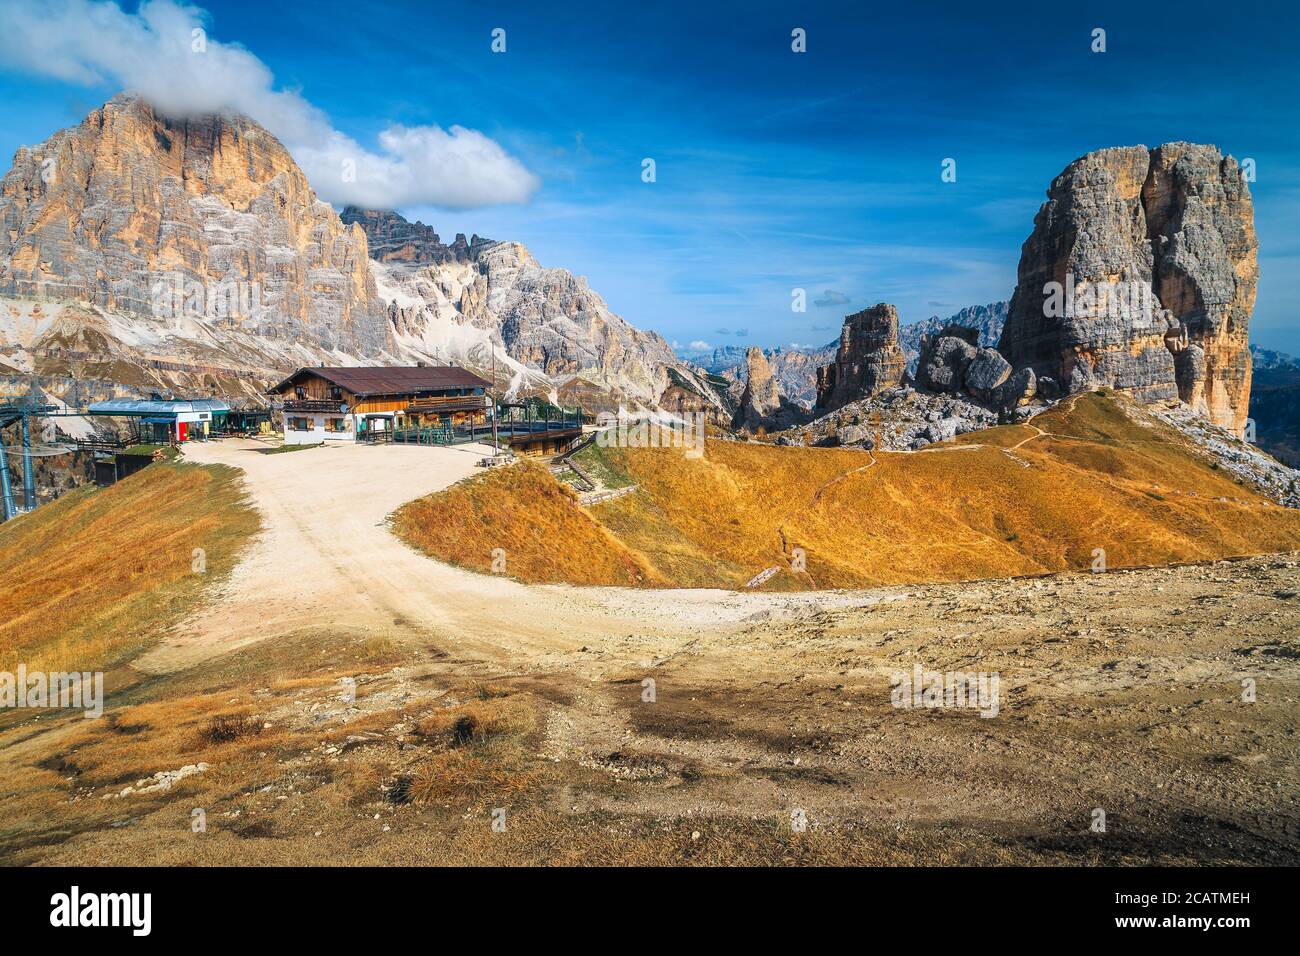 Lieux de randonnée et sentiers de randonnée spectaculaires près des falaises de Cinque Torri, Dolomites, Italie, Europe Banque D'Images